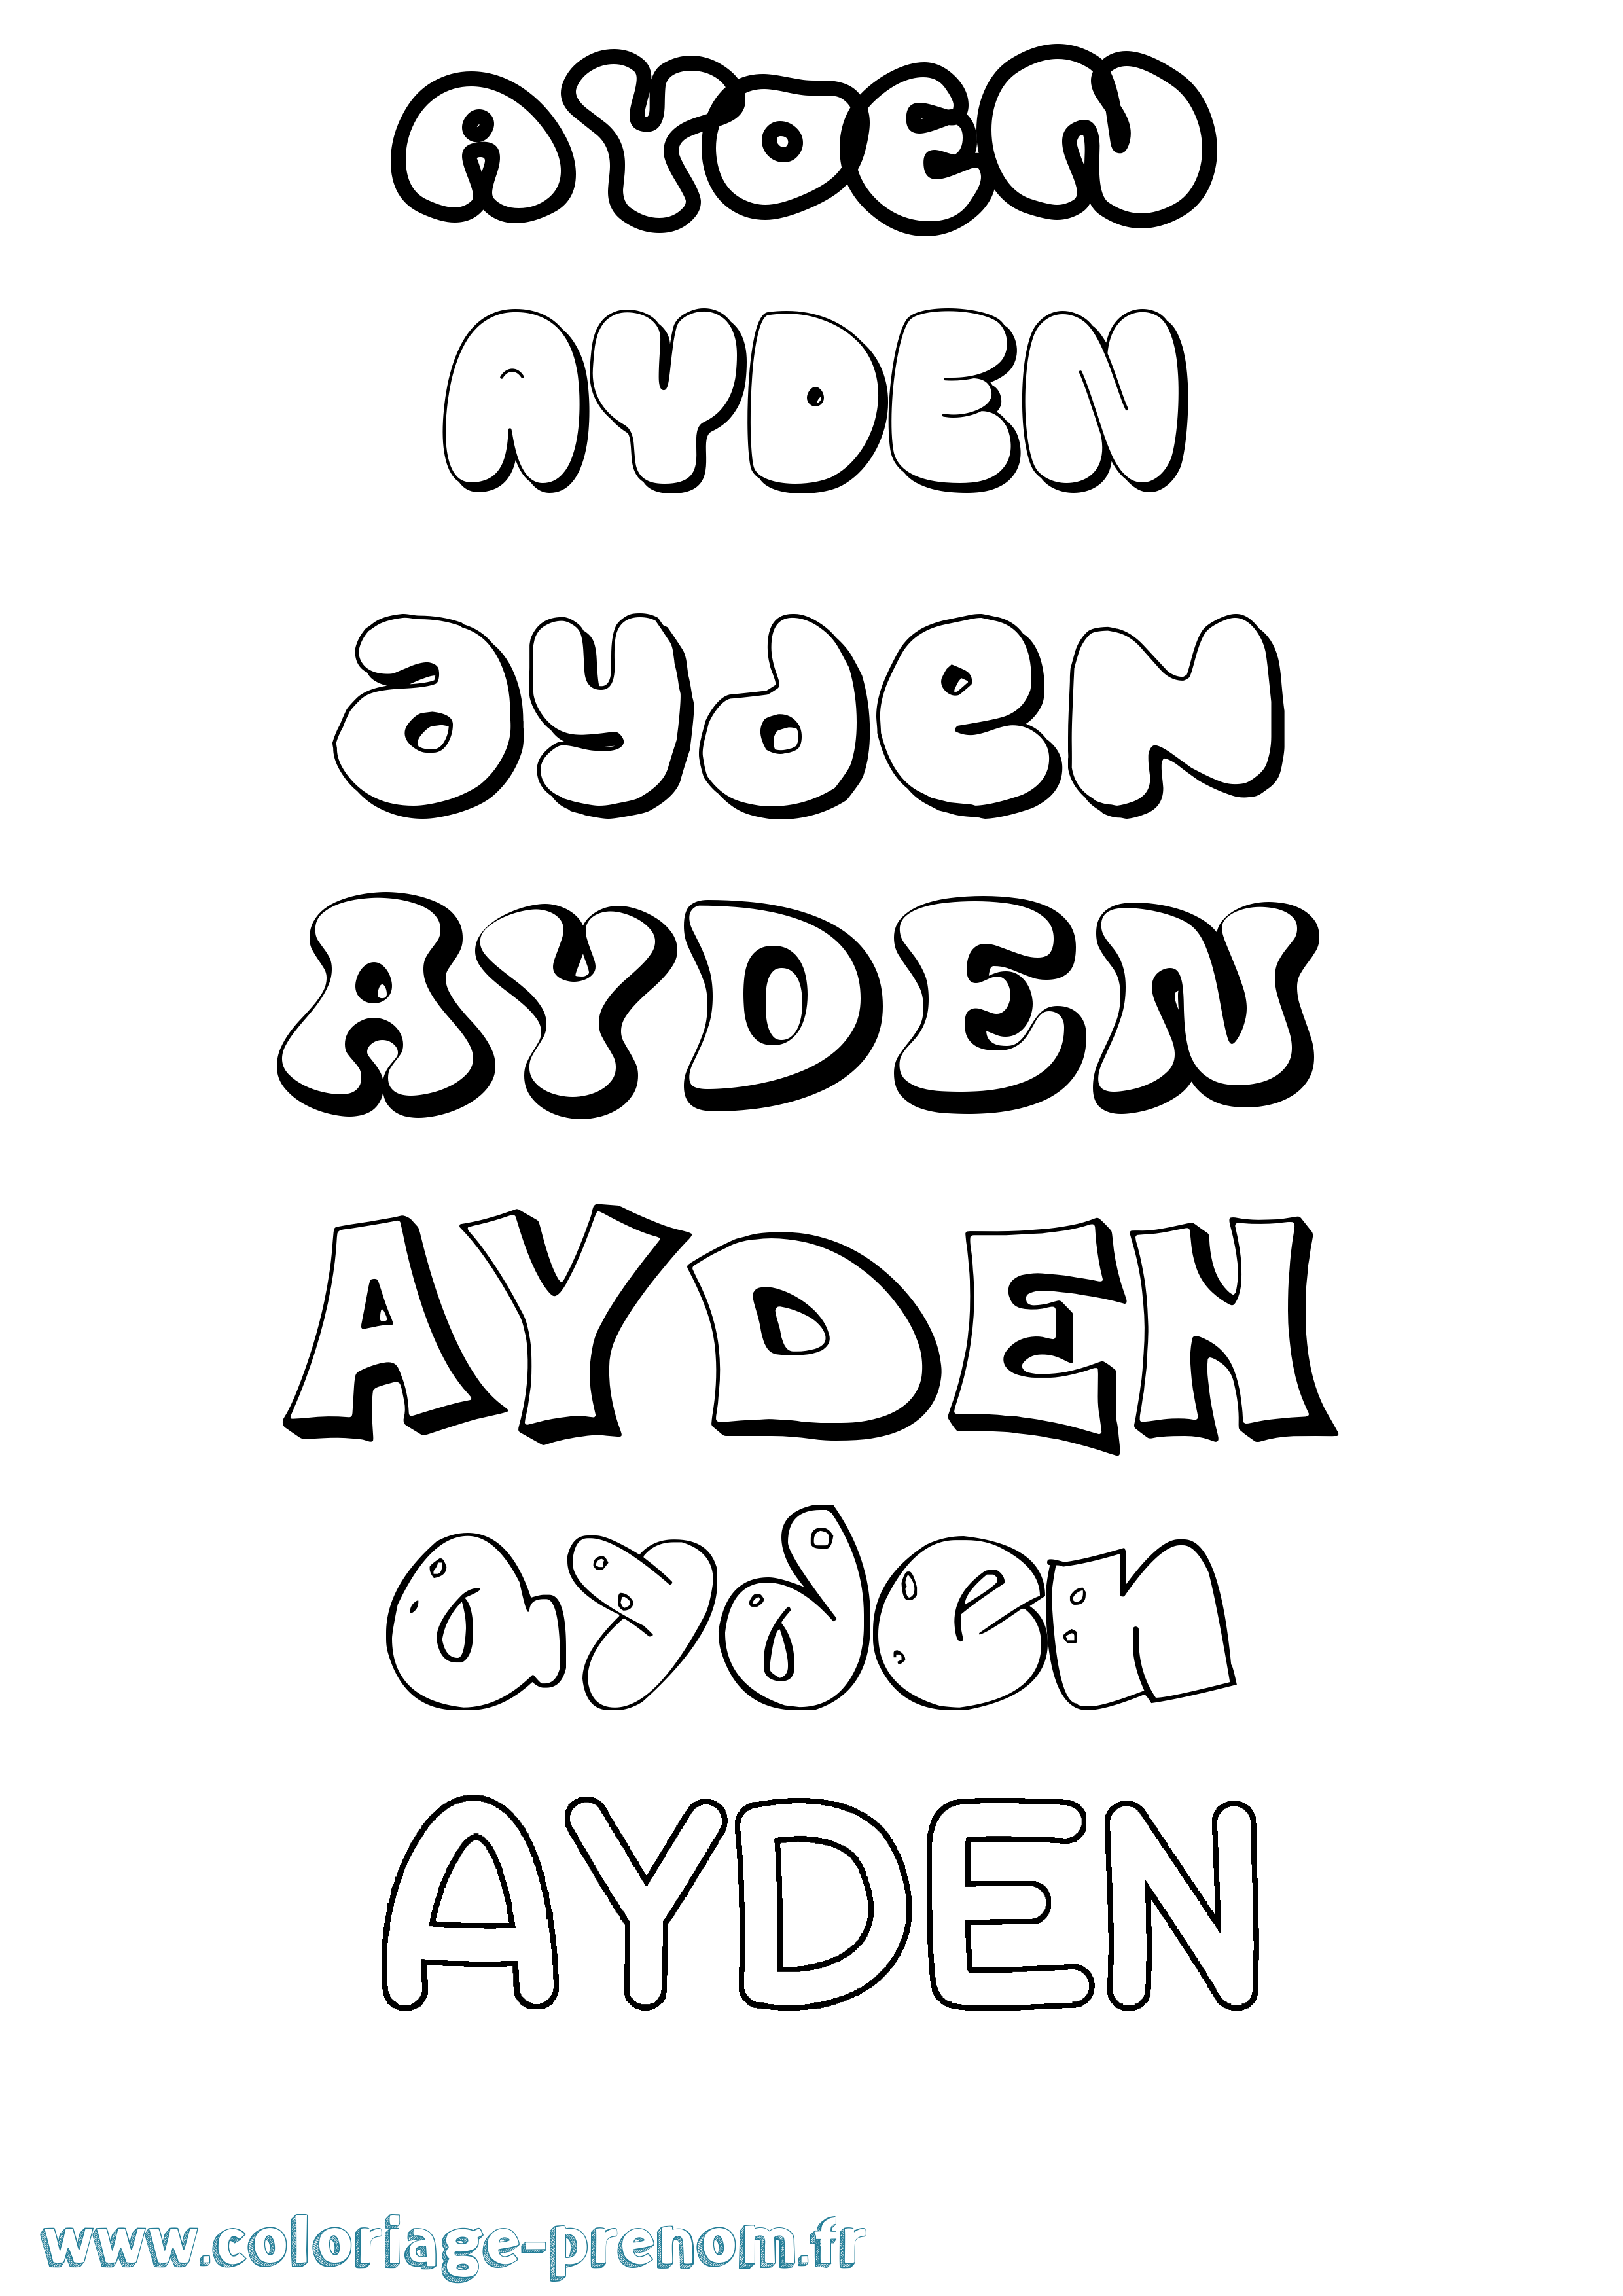 Coloriage prénom Ayden